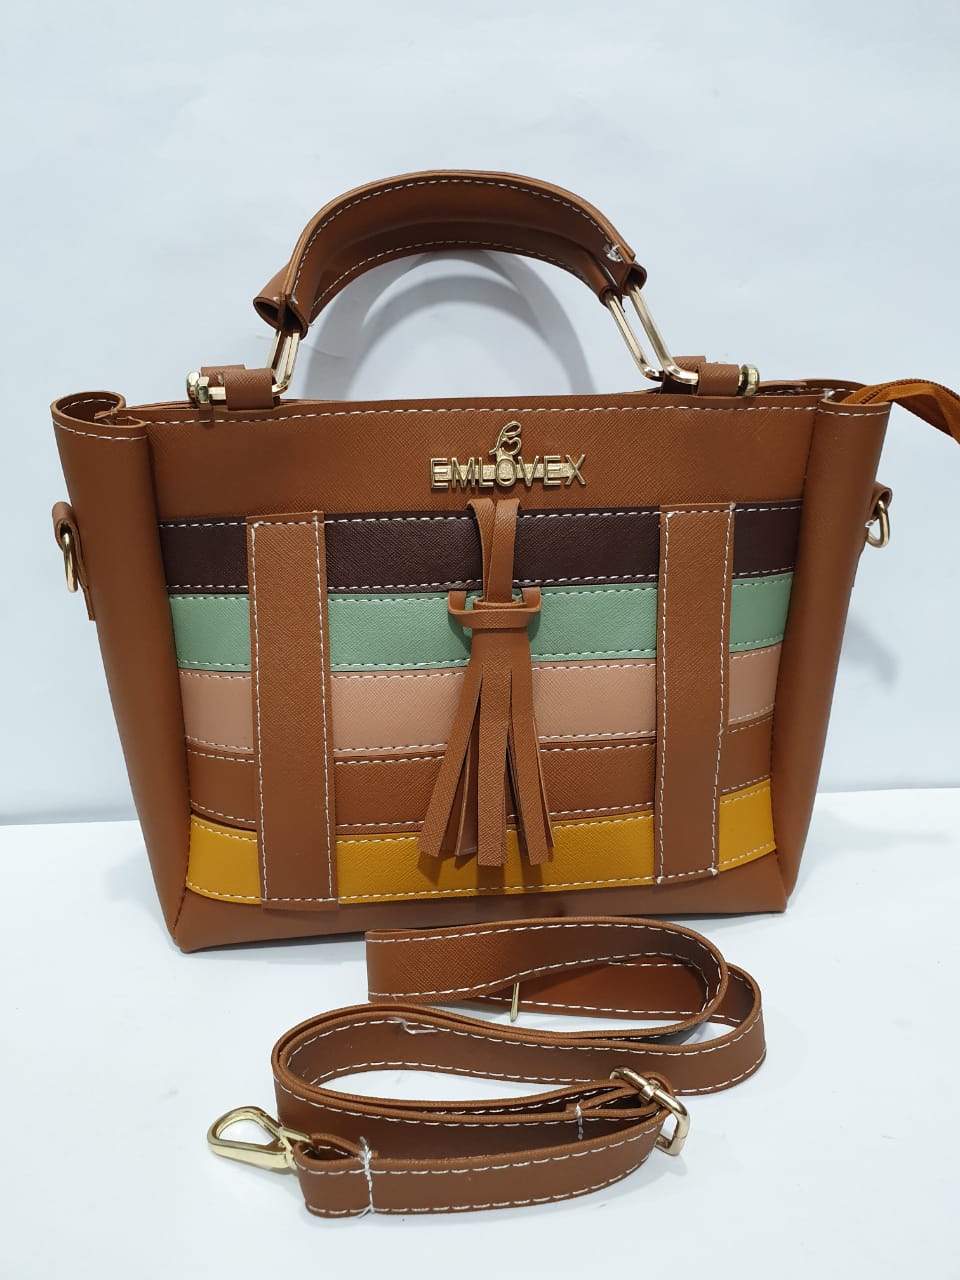 EMLOVEX Ladies handbags – BROWN 4